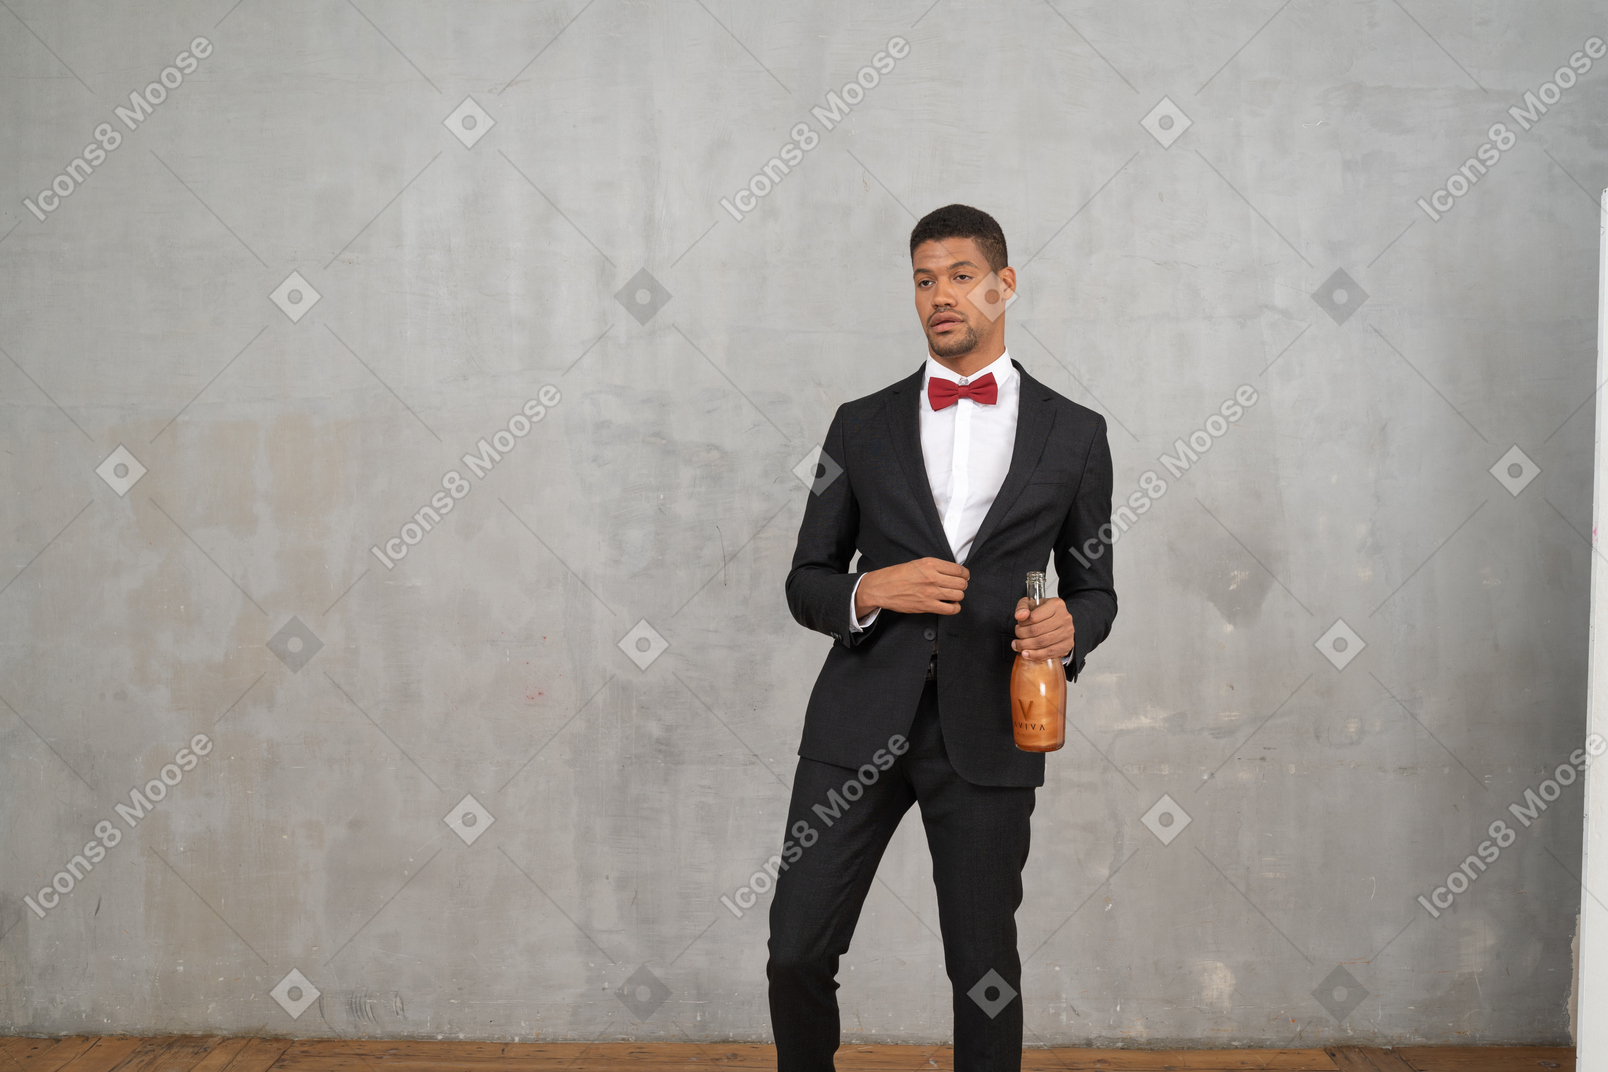 Hombre con ropa formal tambaleándose con una botella en la mano